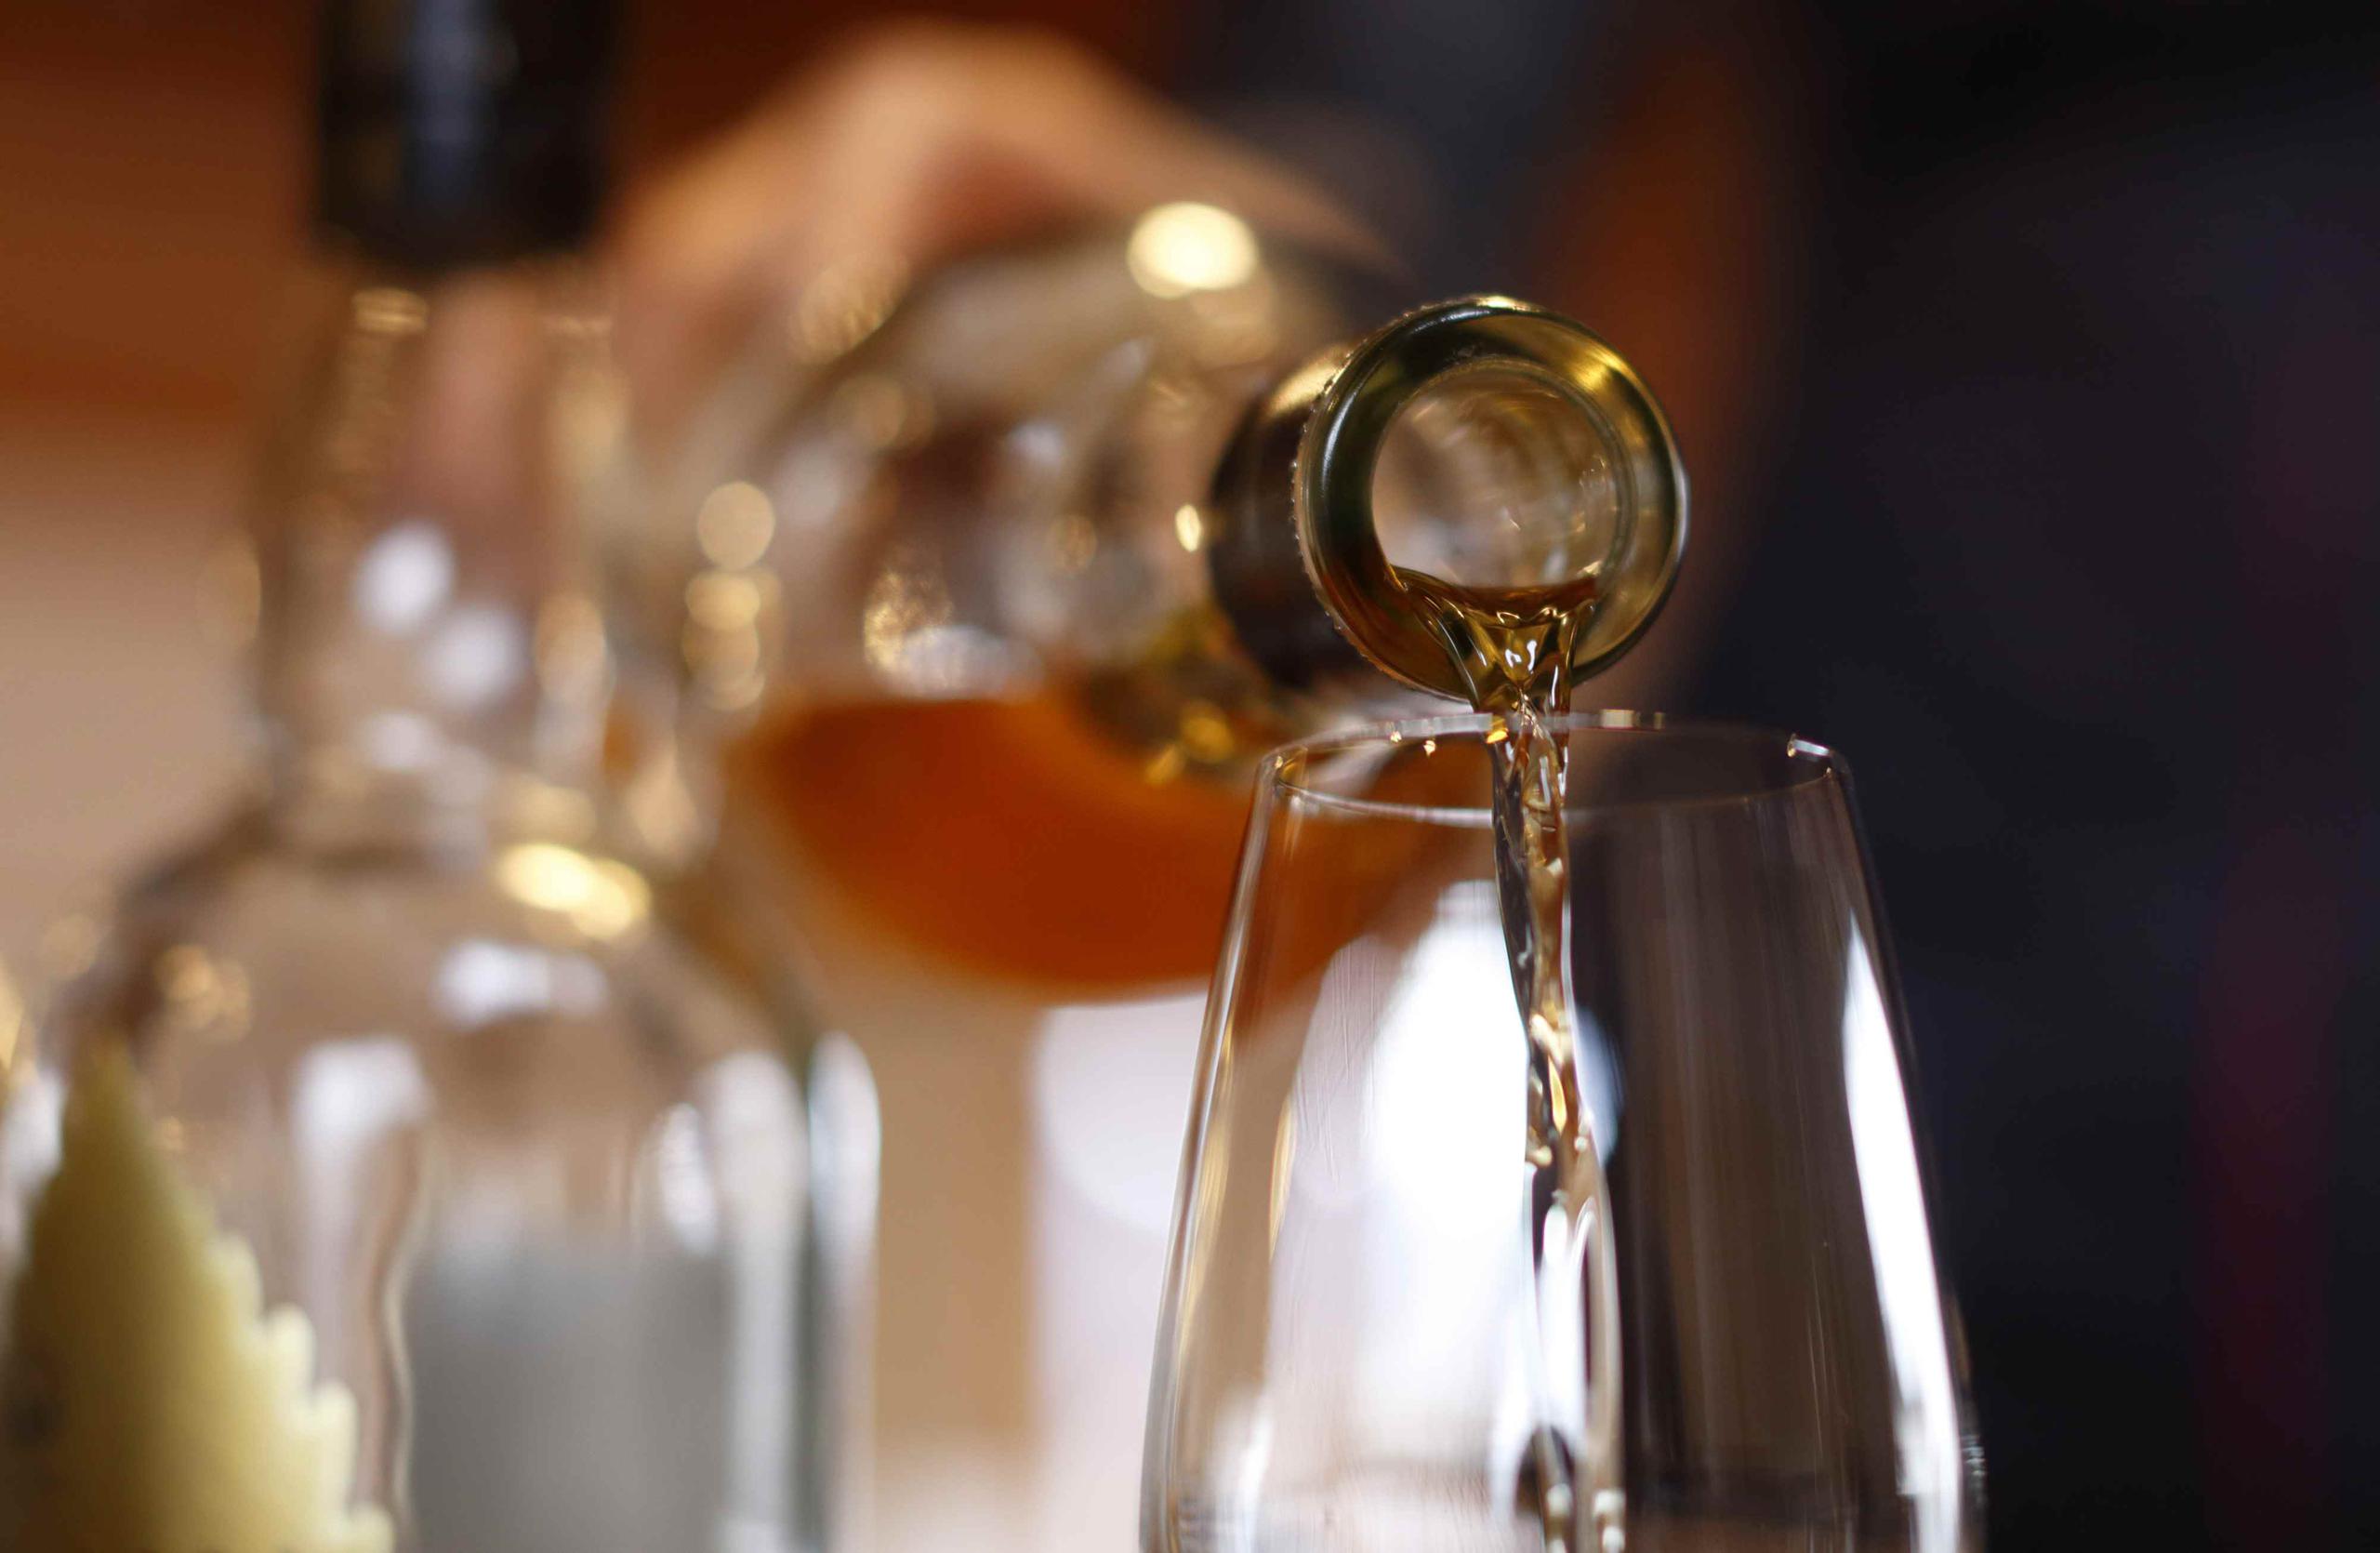 Si bien la mayor parte del whisky japonés es consumido localmente, el año pasado el país vendió un récord de $95 millones de la bebida al extranjero. (Tomohiro Ohsumi / Bloomberg)